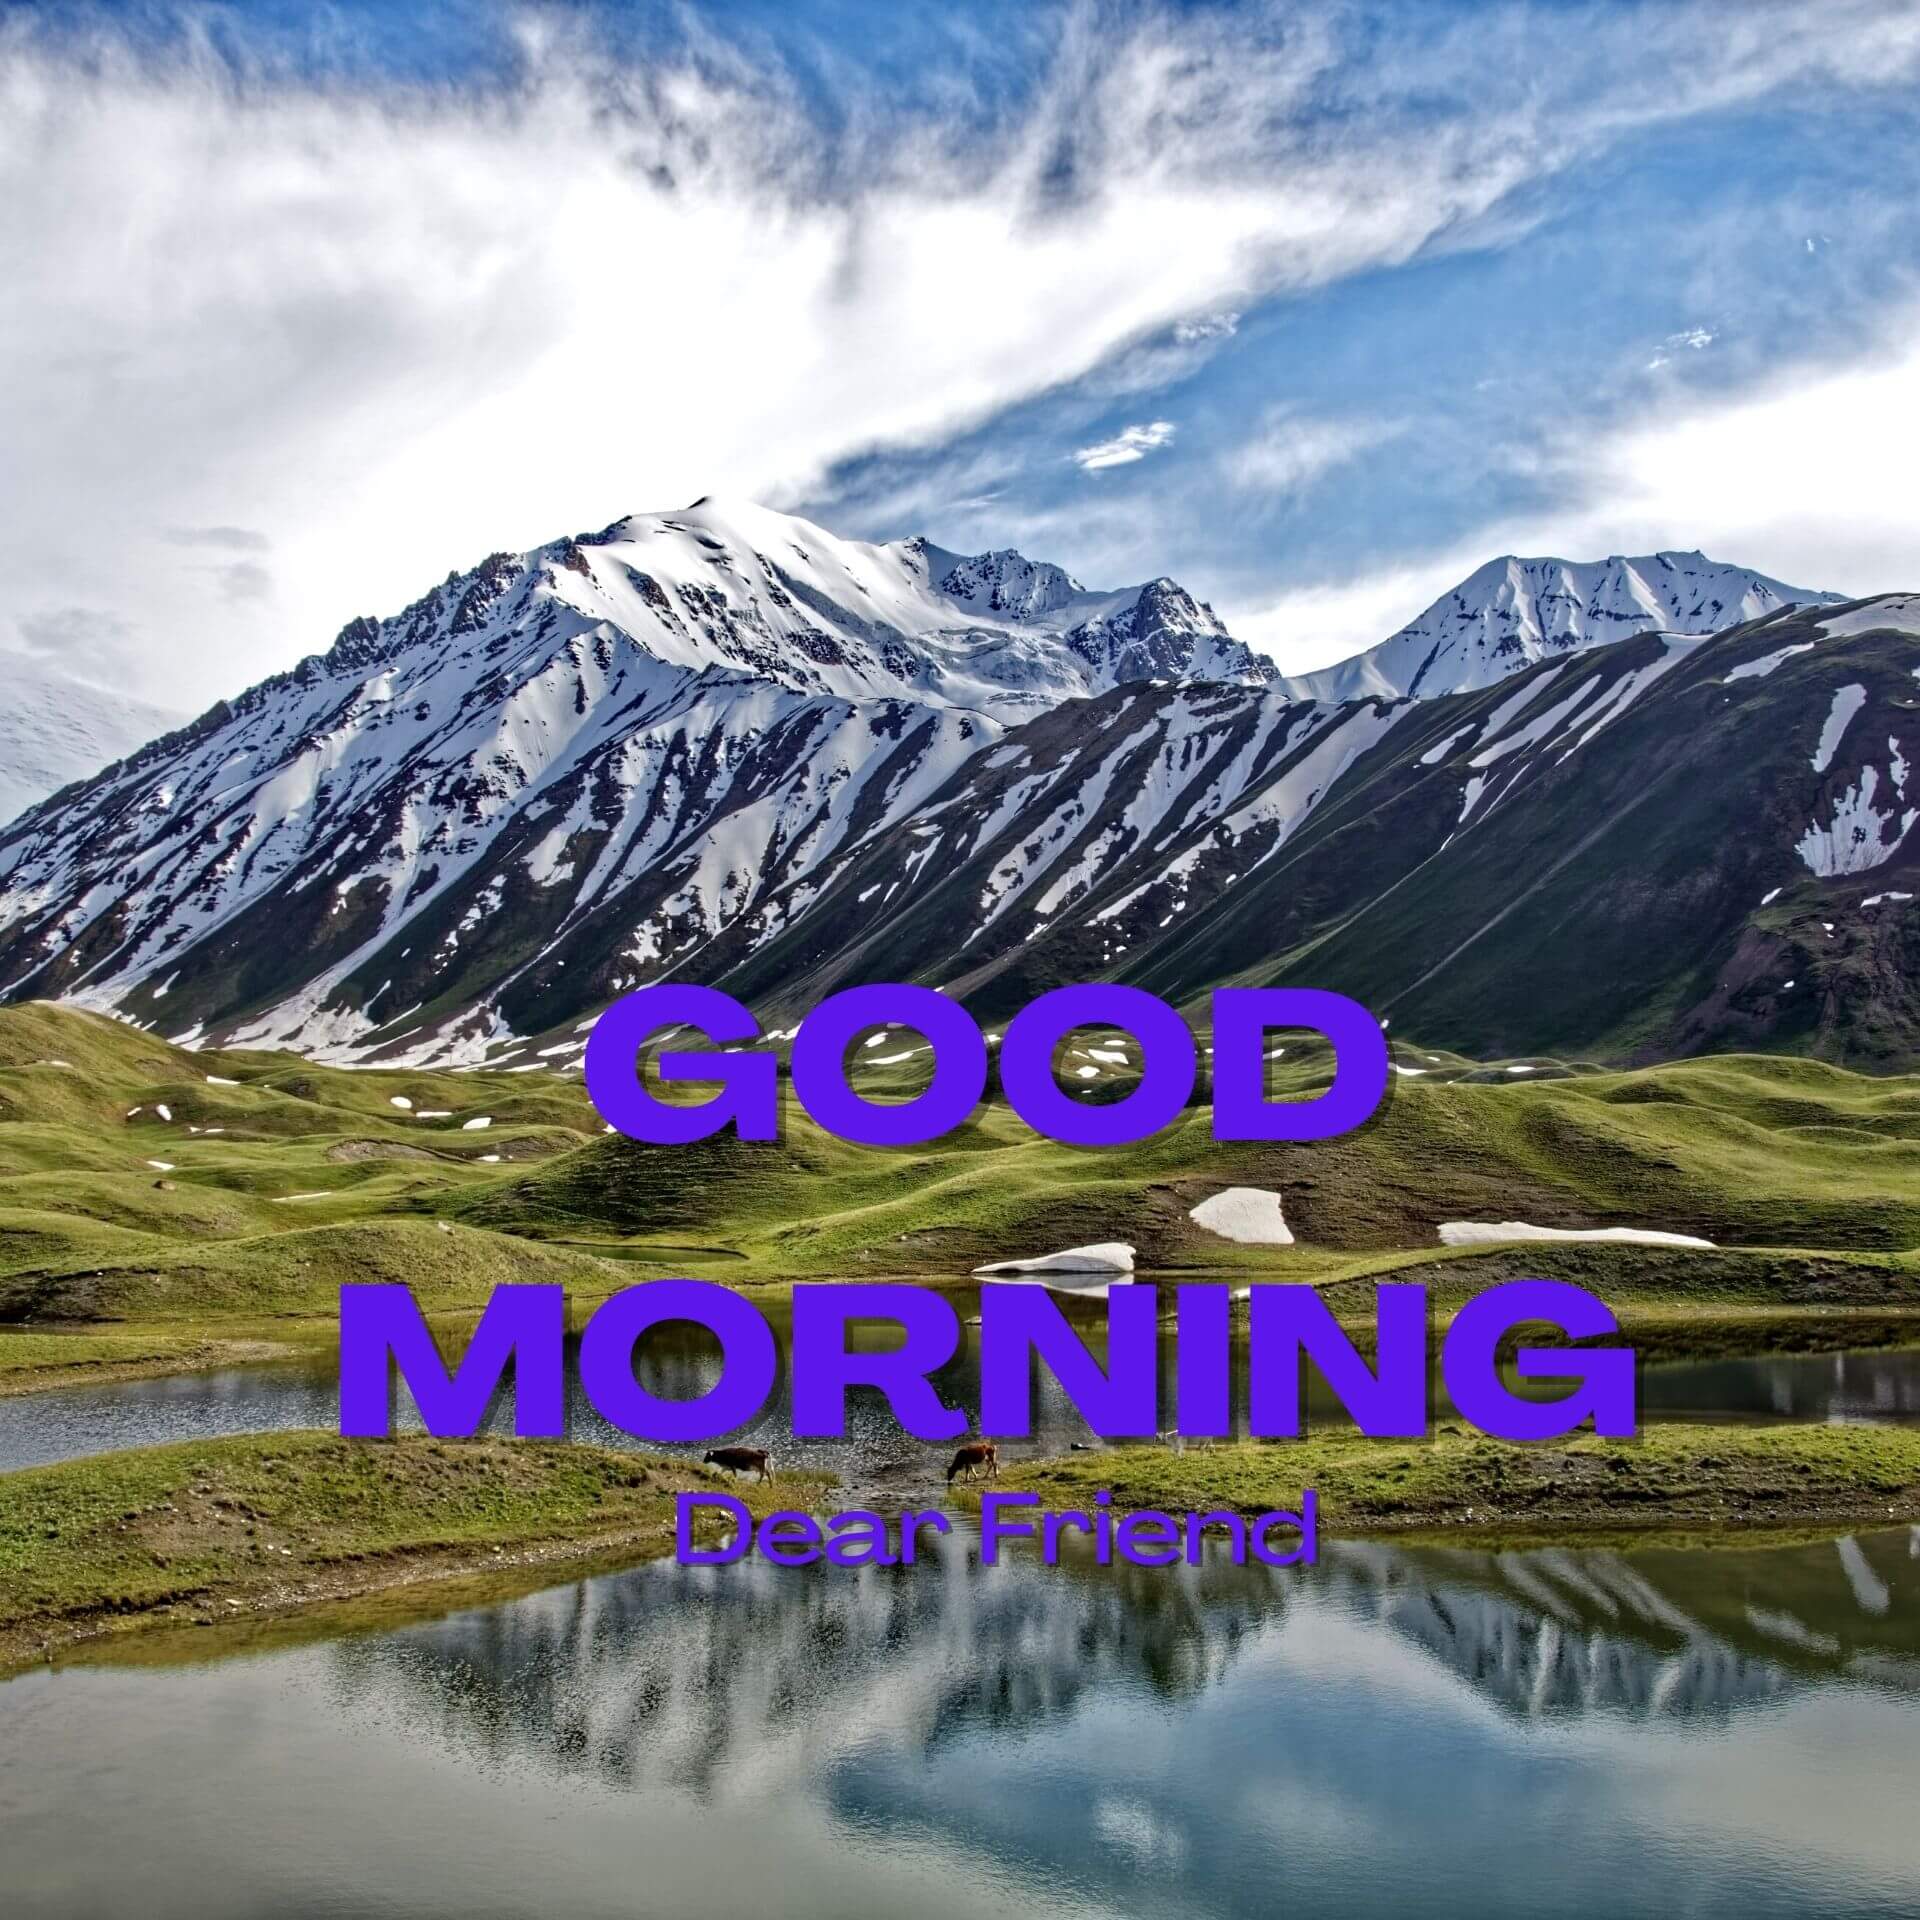 Good Morning 1080p pics Wallpaper HD Download